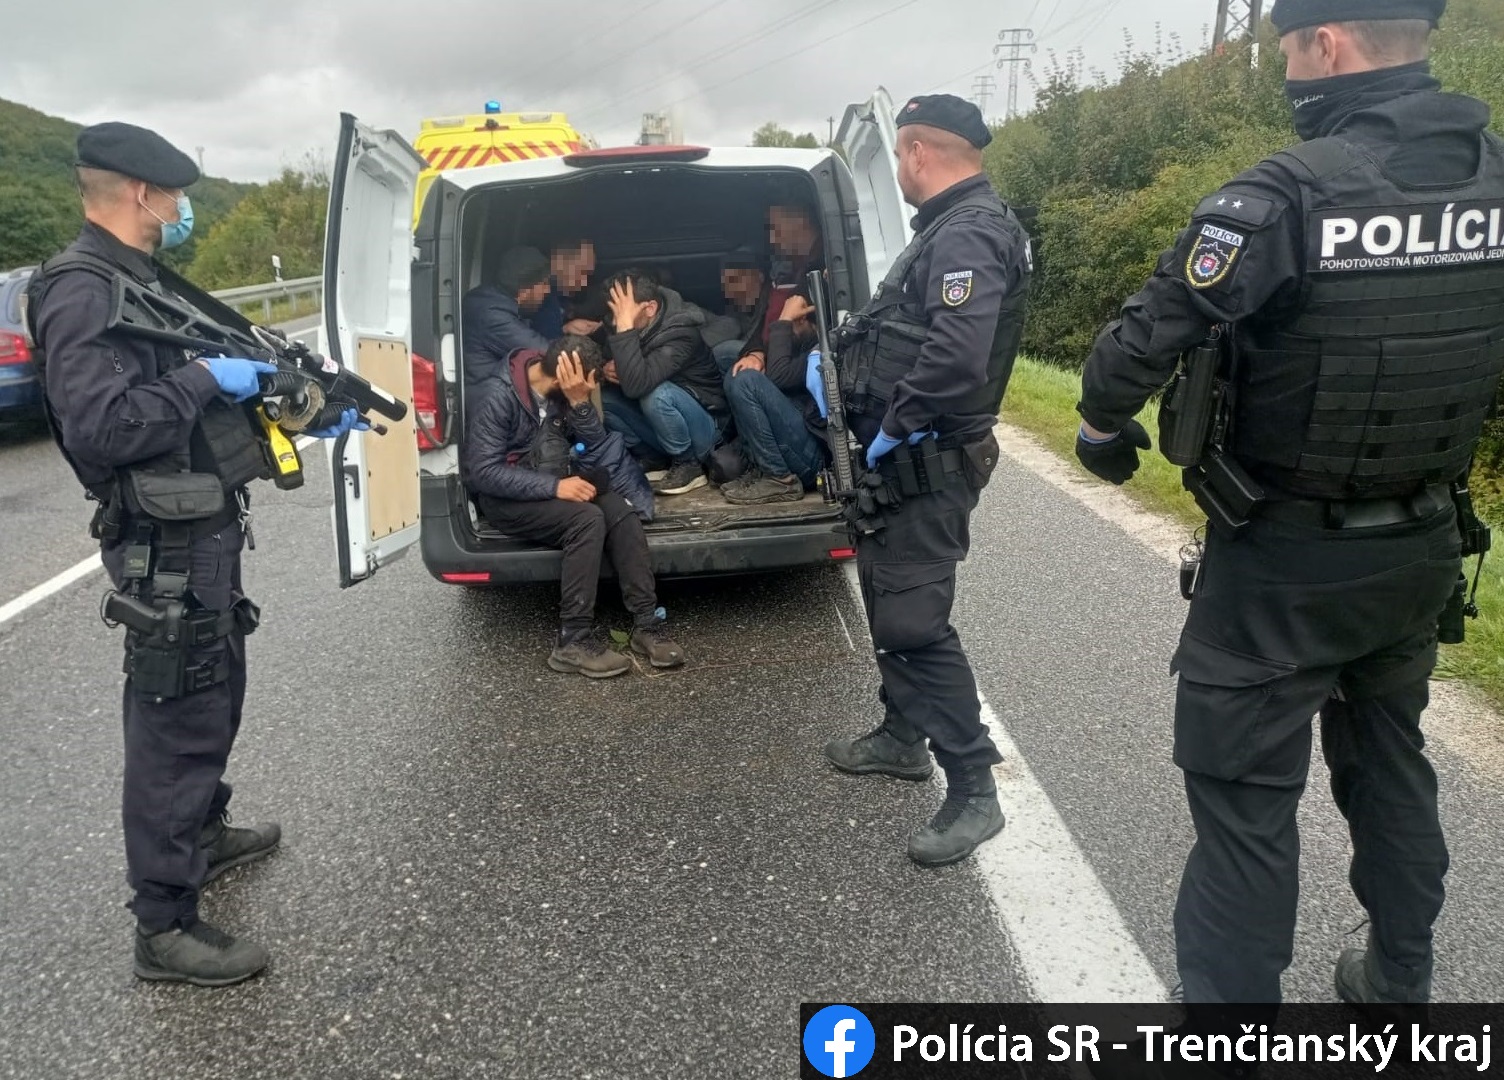 Slovenská polícia eviduje zvýšený počet migrantov! Zavádzajú kontroly na hraniciach (FOTO)